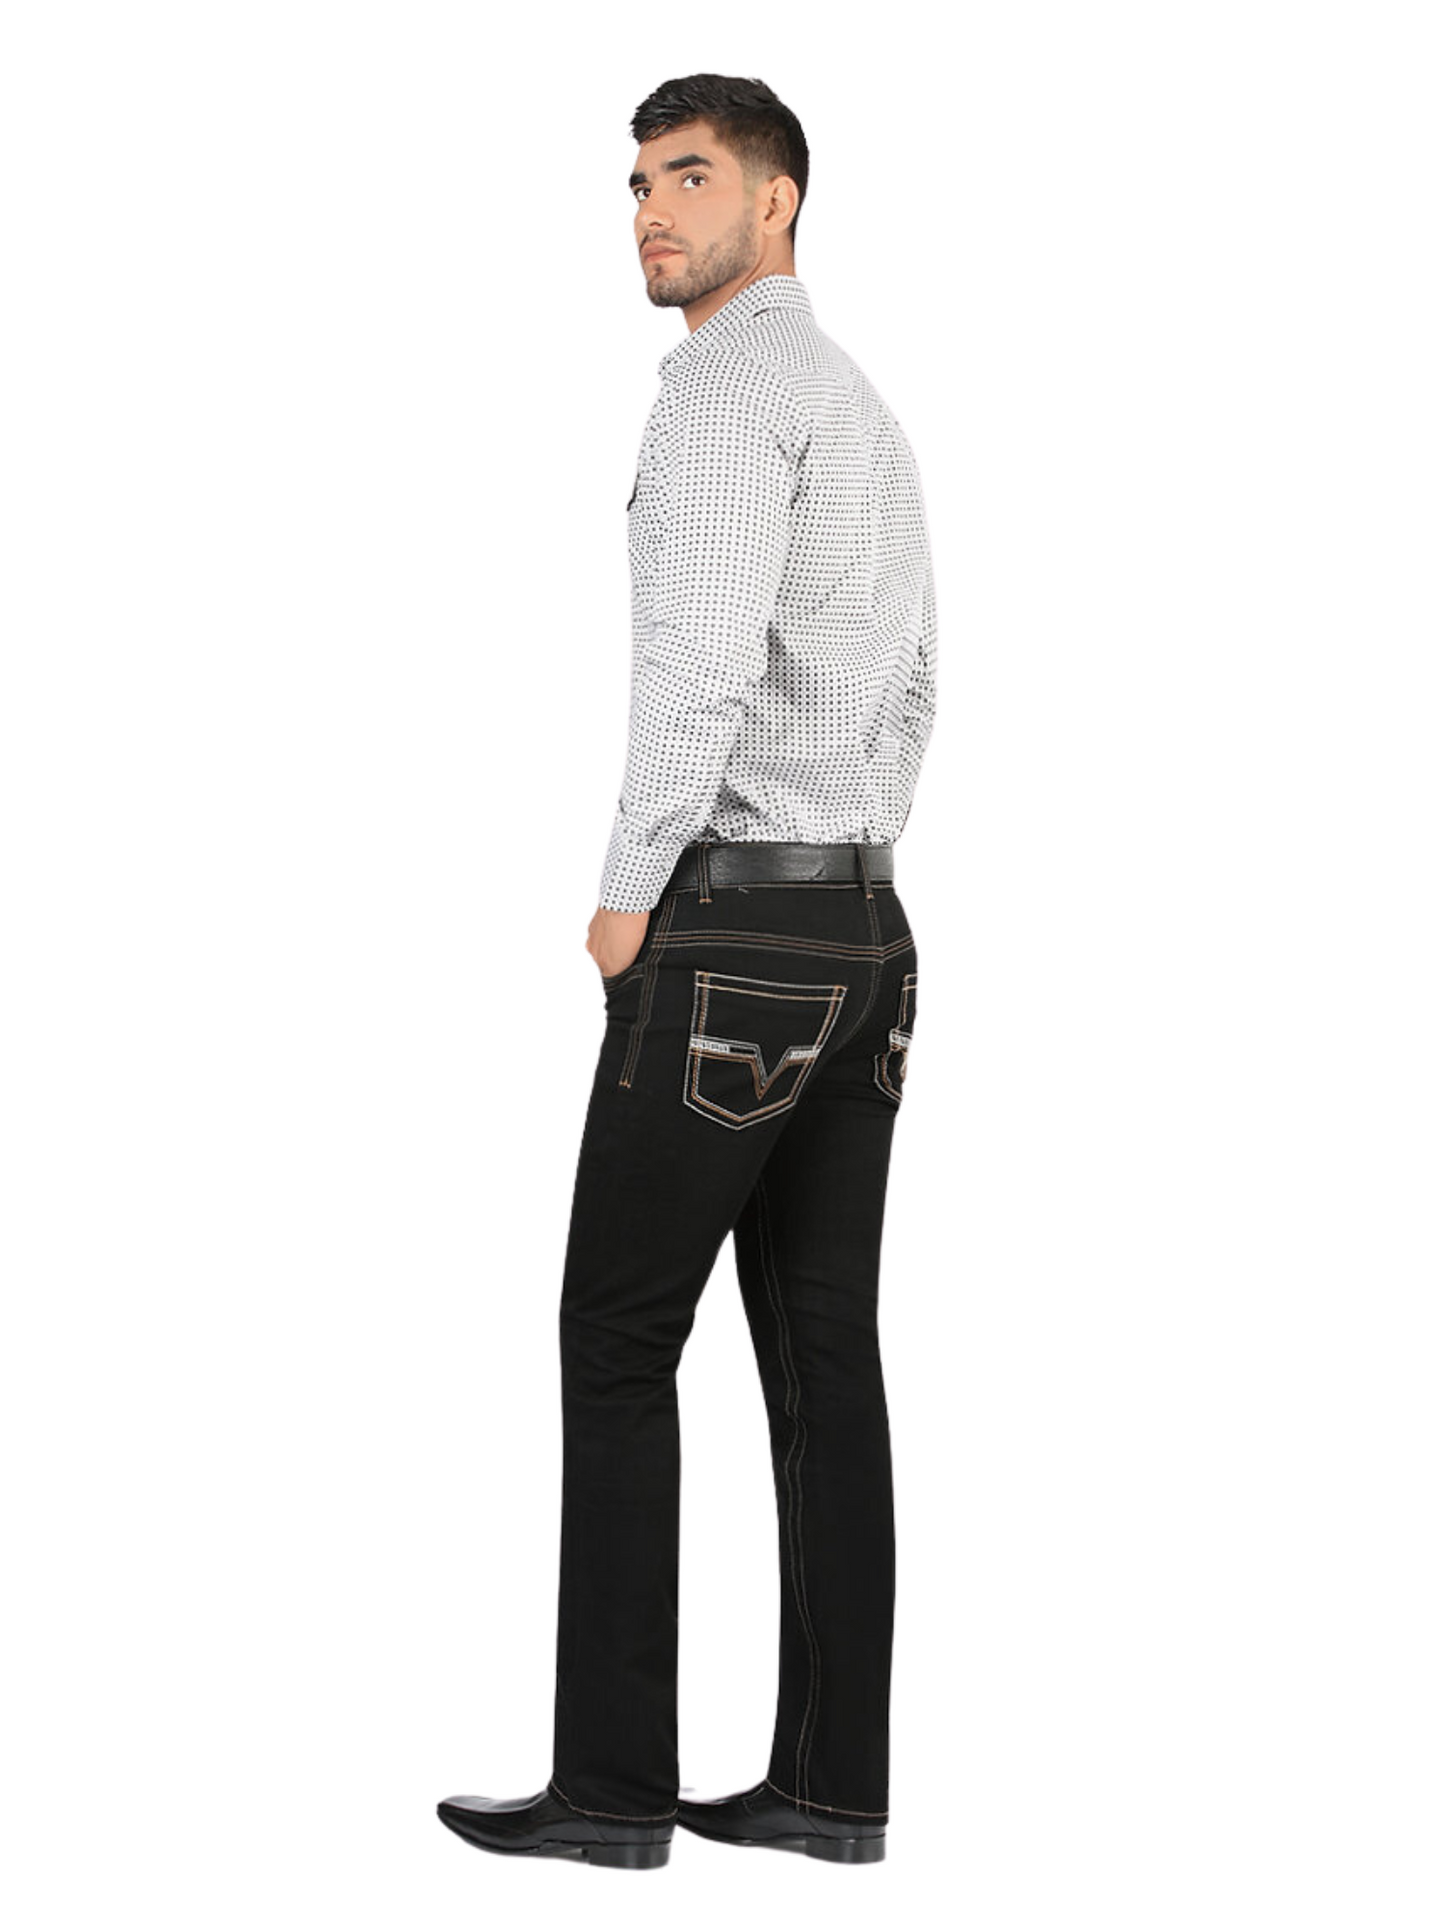 Pantalon Vaquero de Mezclilla Stretch para Hombre 'Montero' - ID: 5307 Pantalones de Vaquero Montero 